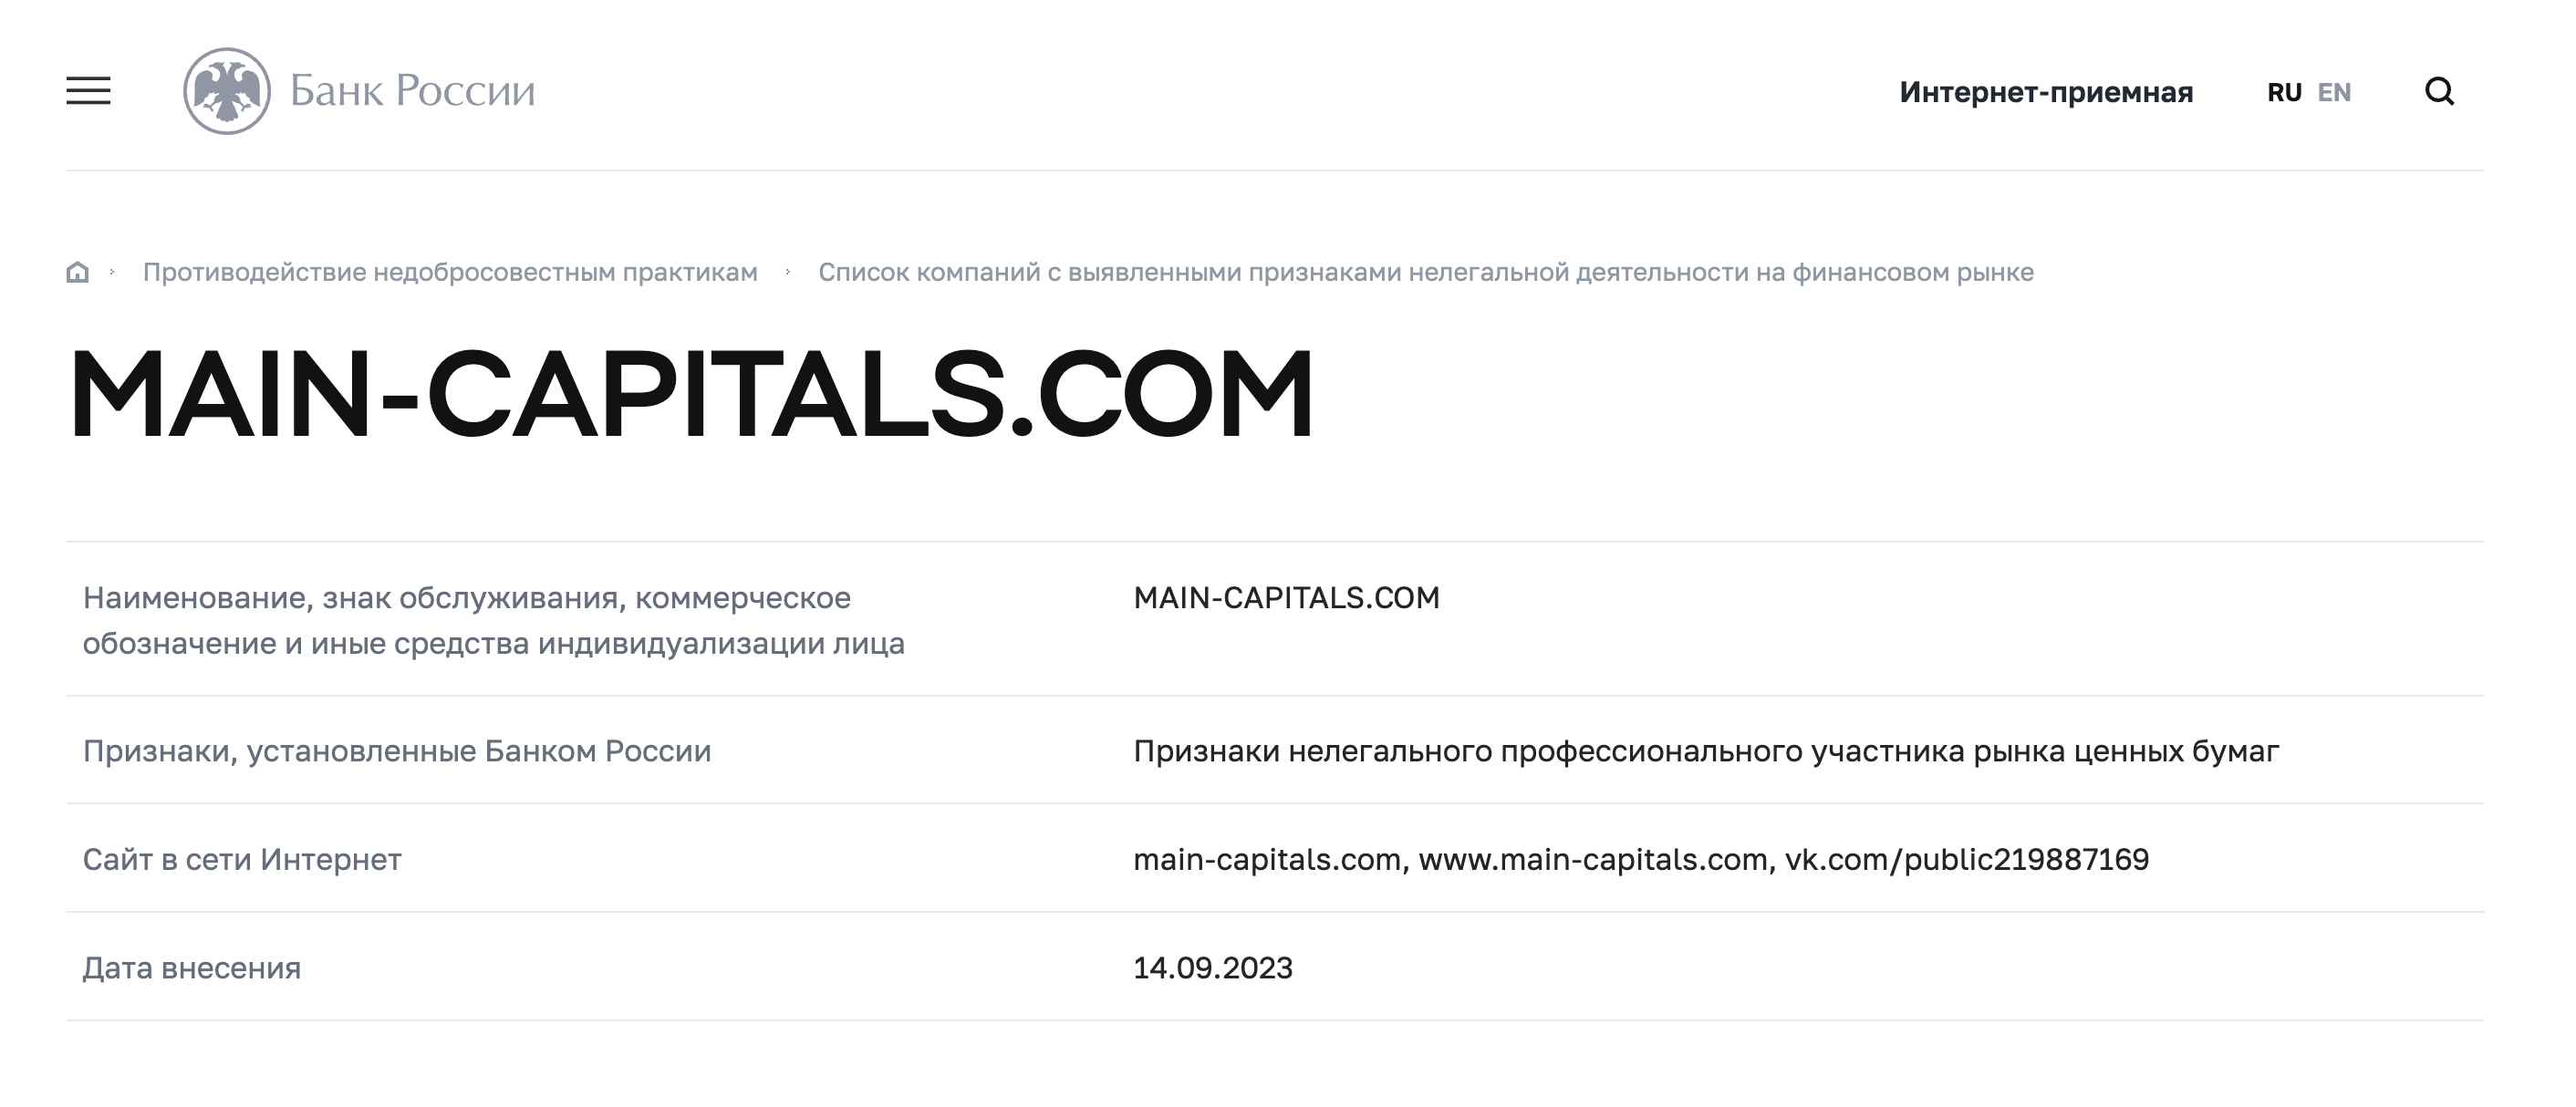 Main Capitals — надежный партнер или очередной мошеннический проект?